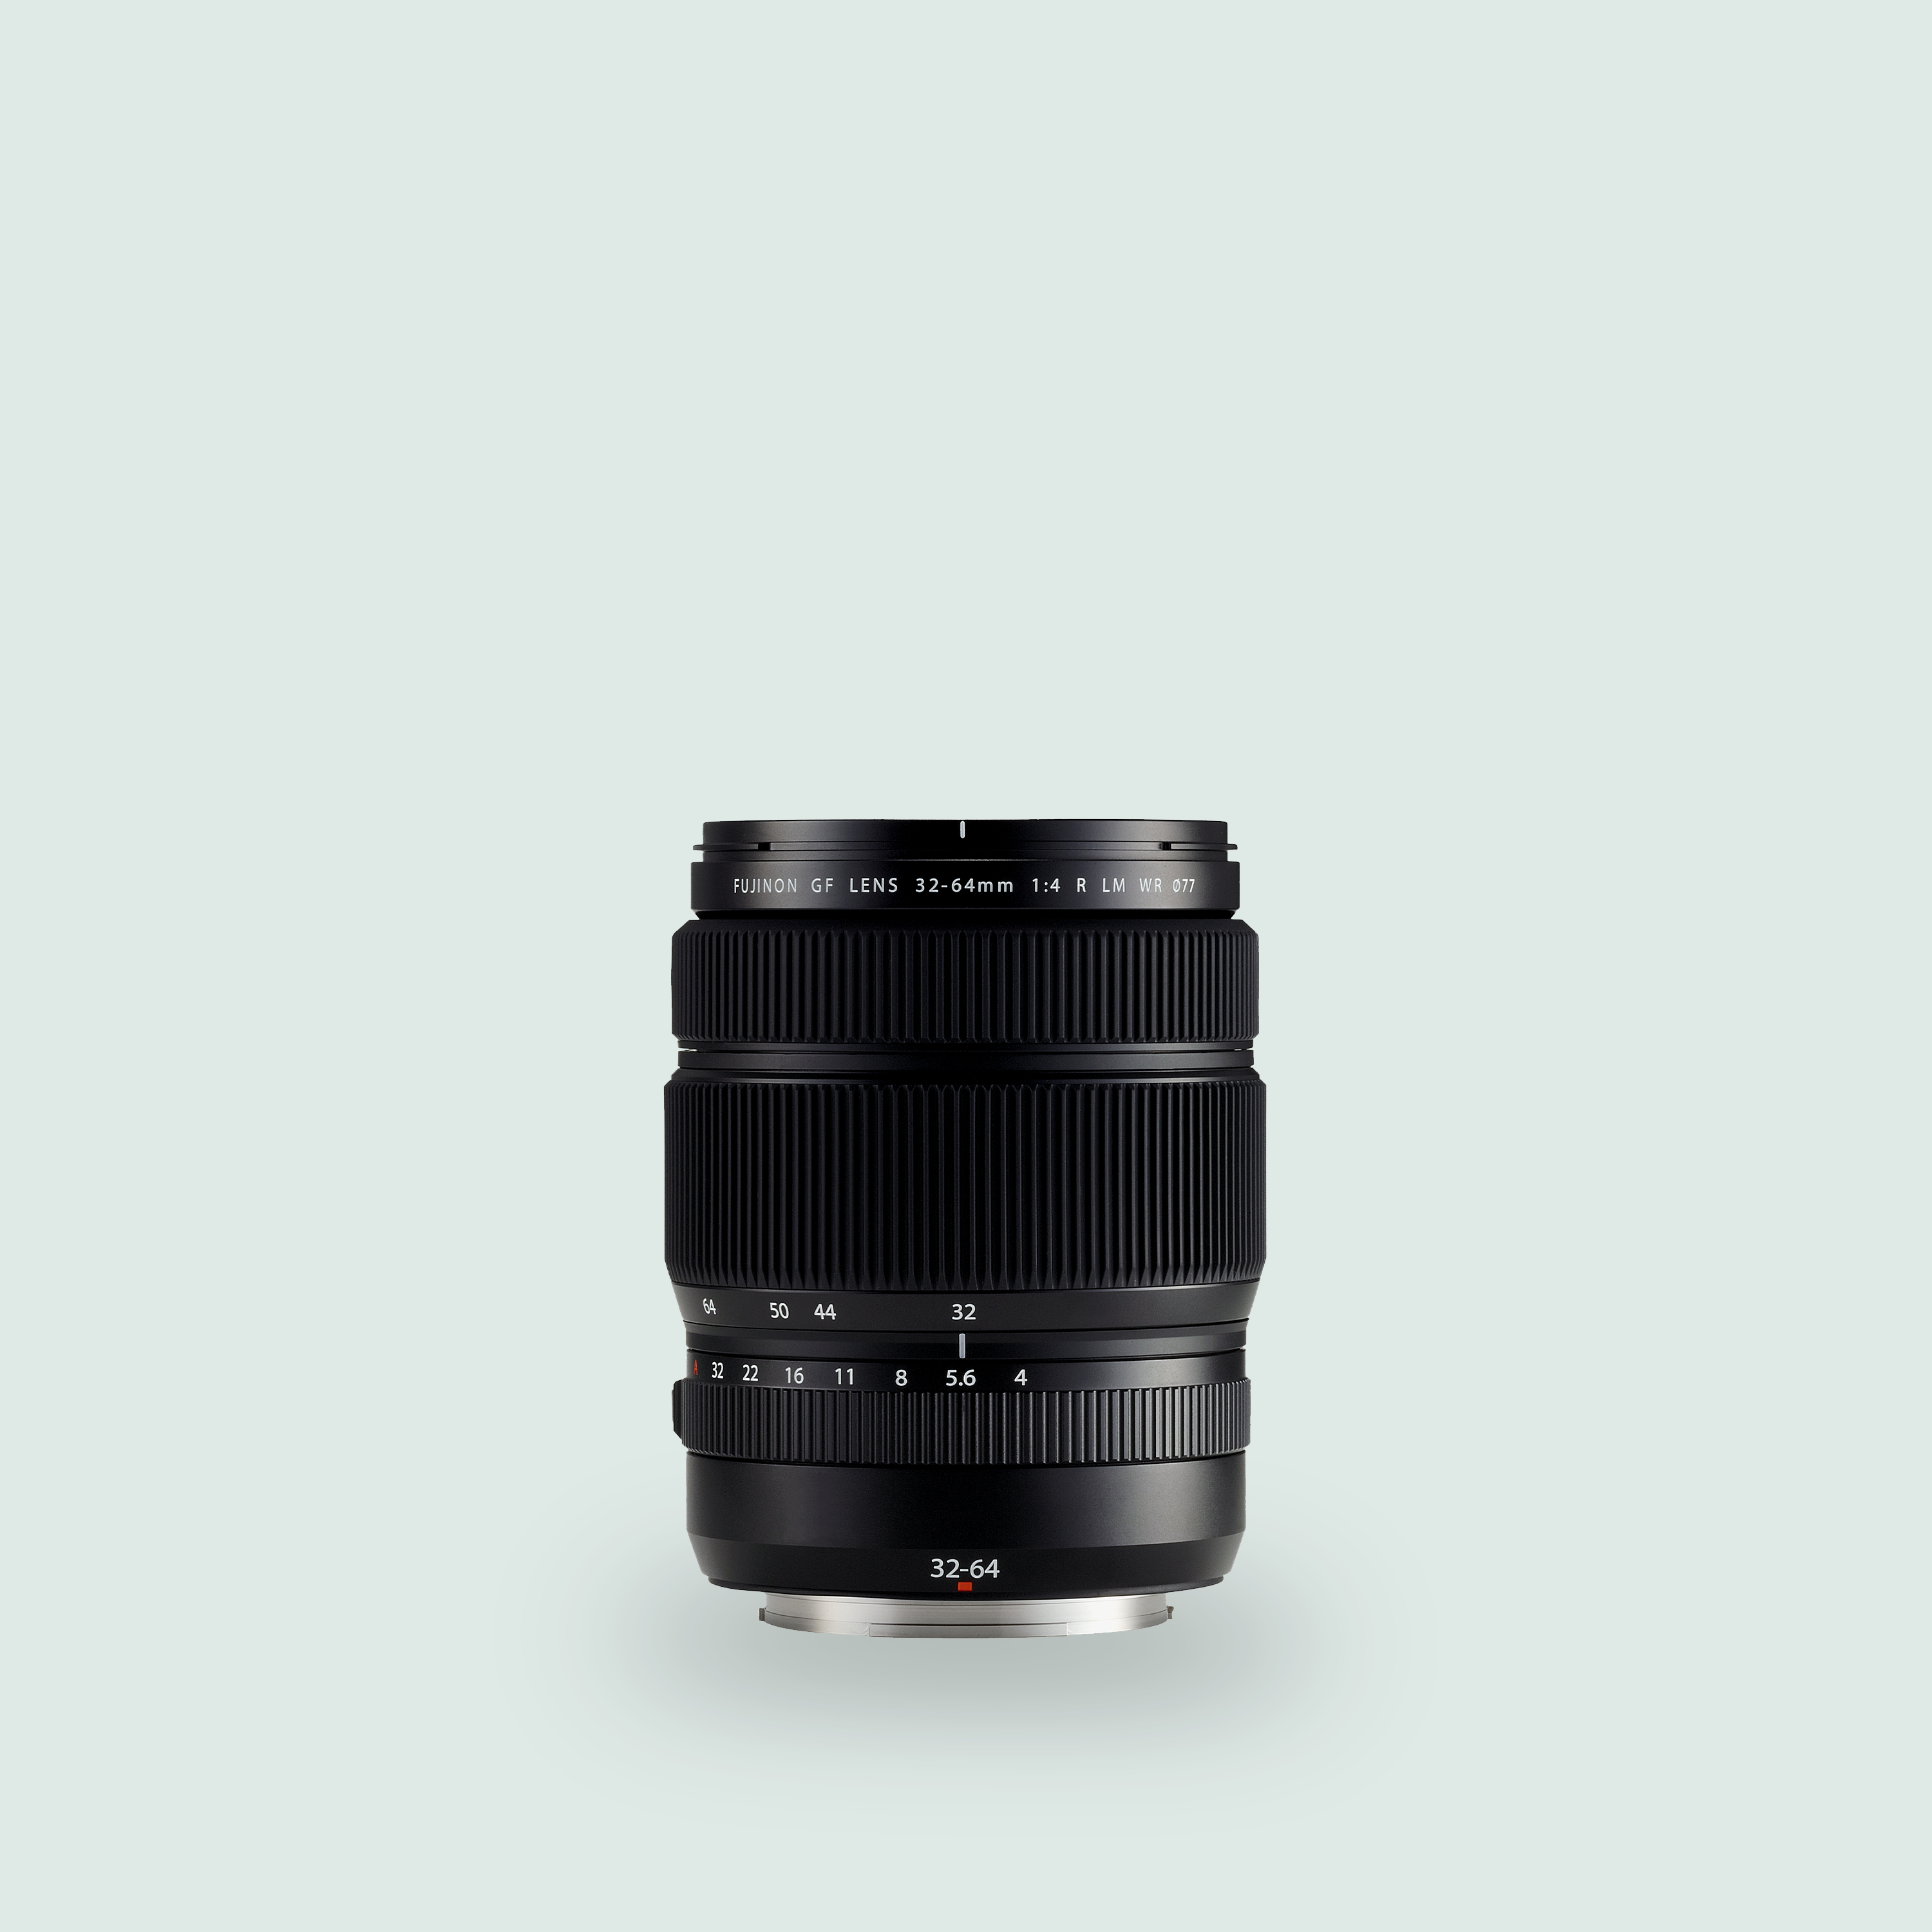 GF 45-100mm F4 R LM OIS WR Lens | Fujifilm AU House of Photography